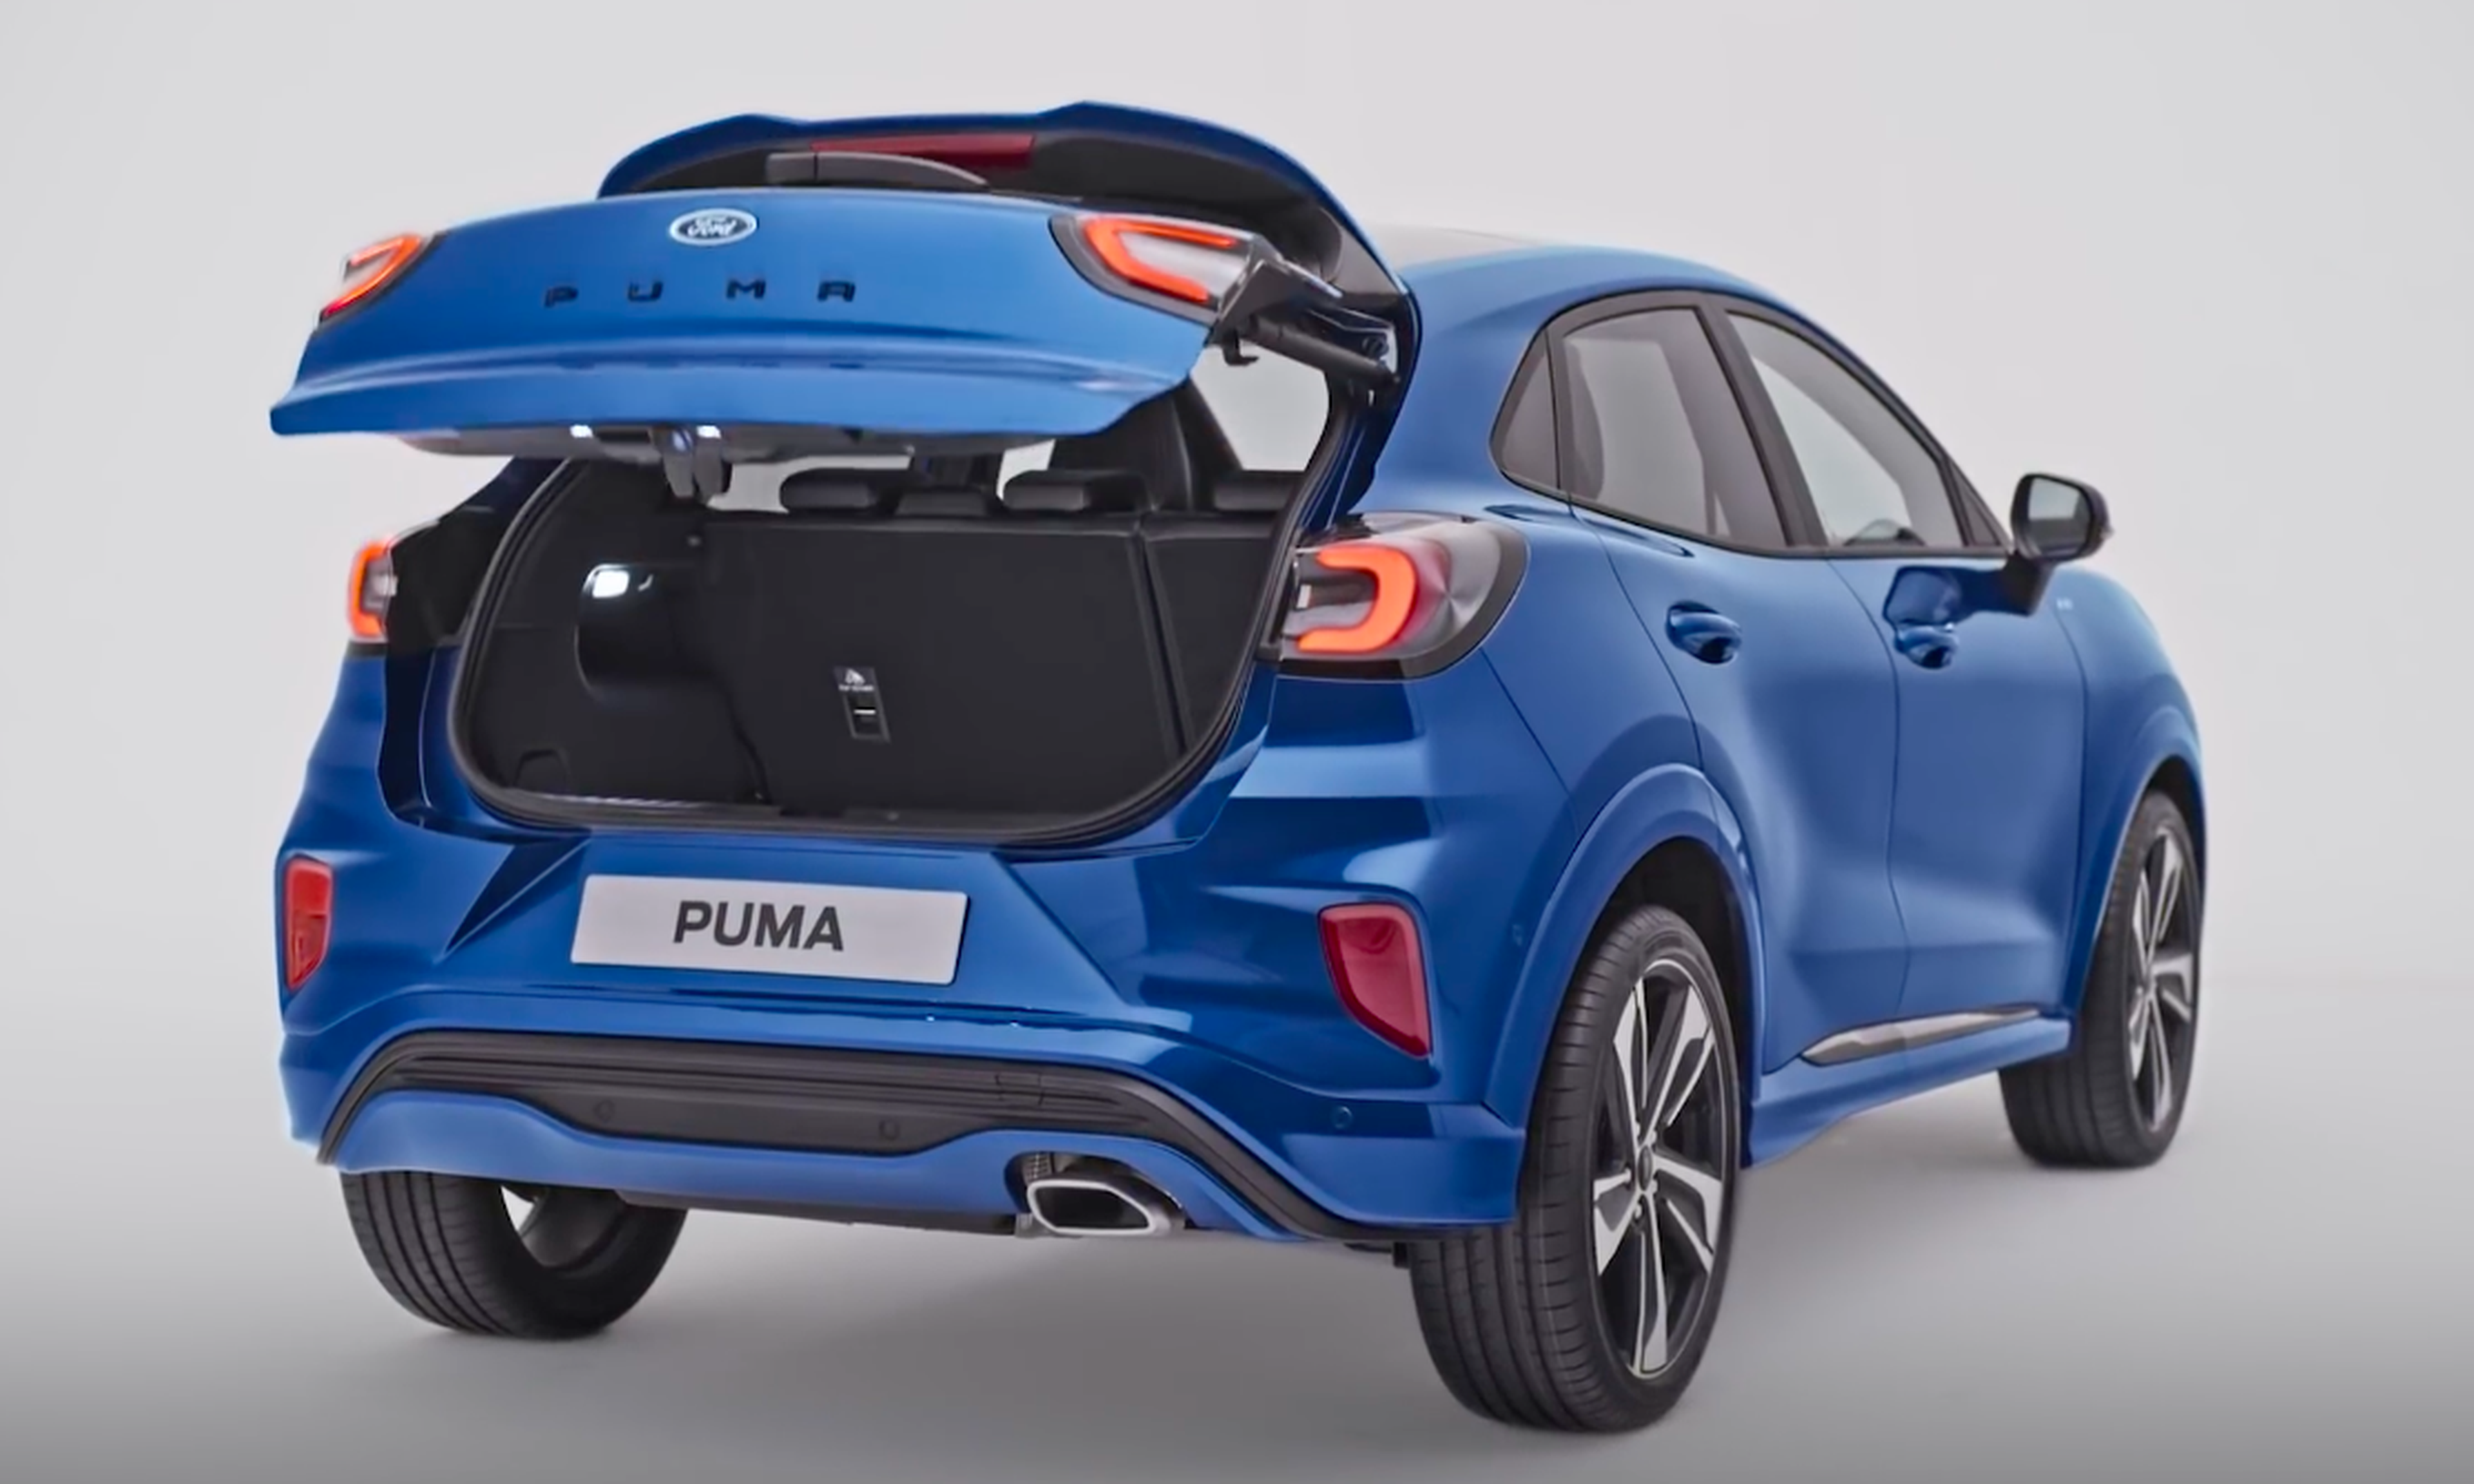 VÍDEO: El Ford Puma 2019 saca pecho de su maletero, ¡mira!